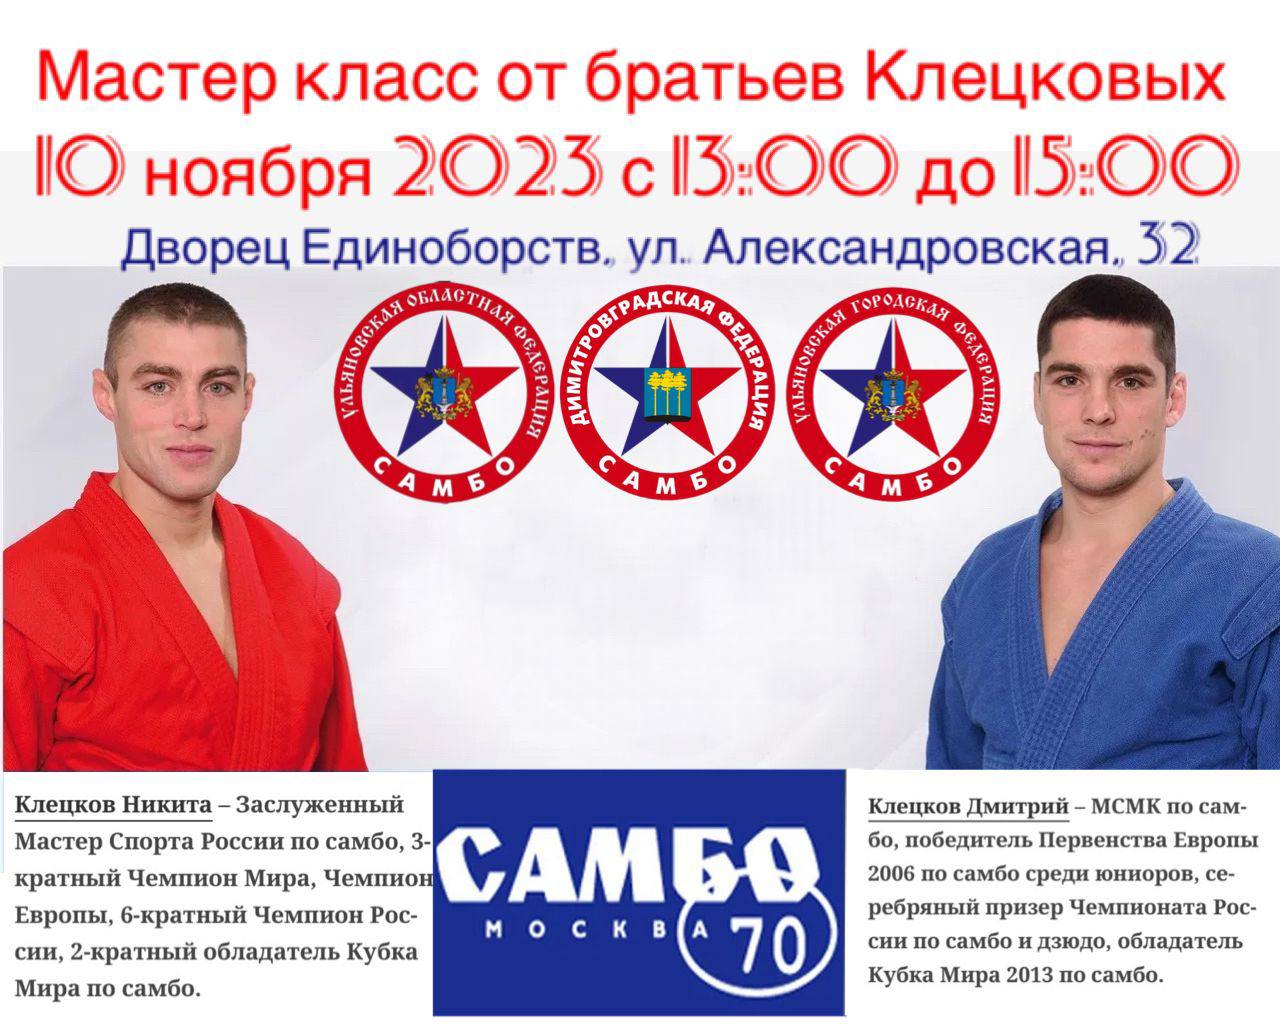 Братья-чемпионы по самбо проведут в Ульяновске мастер-класс